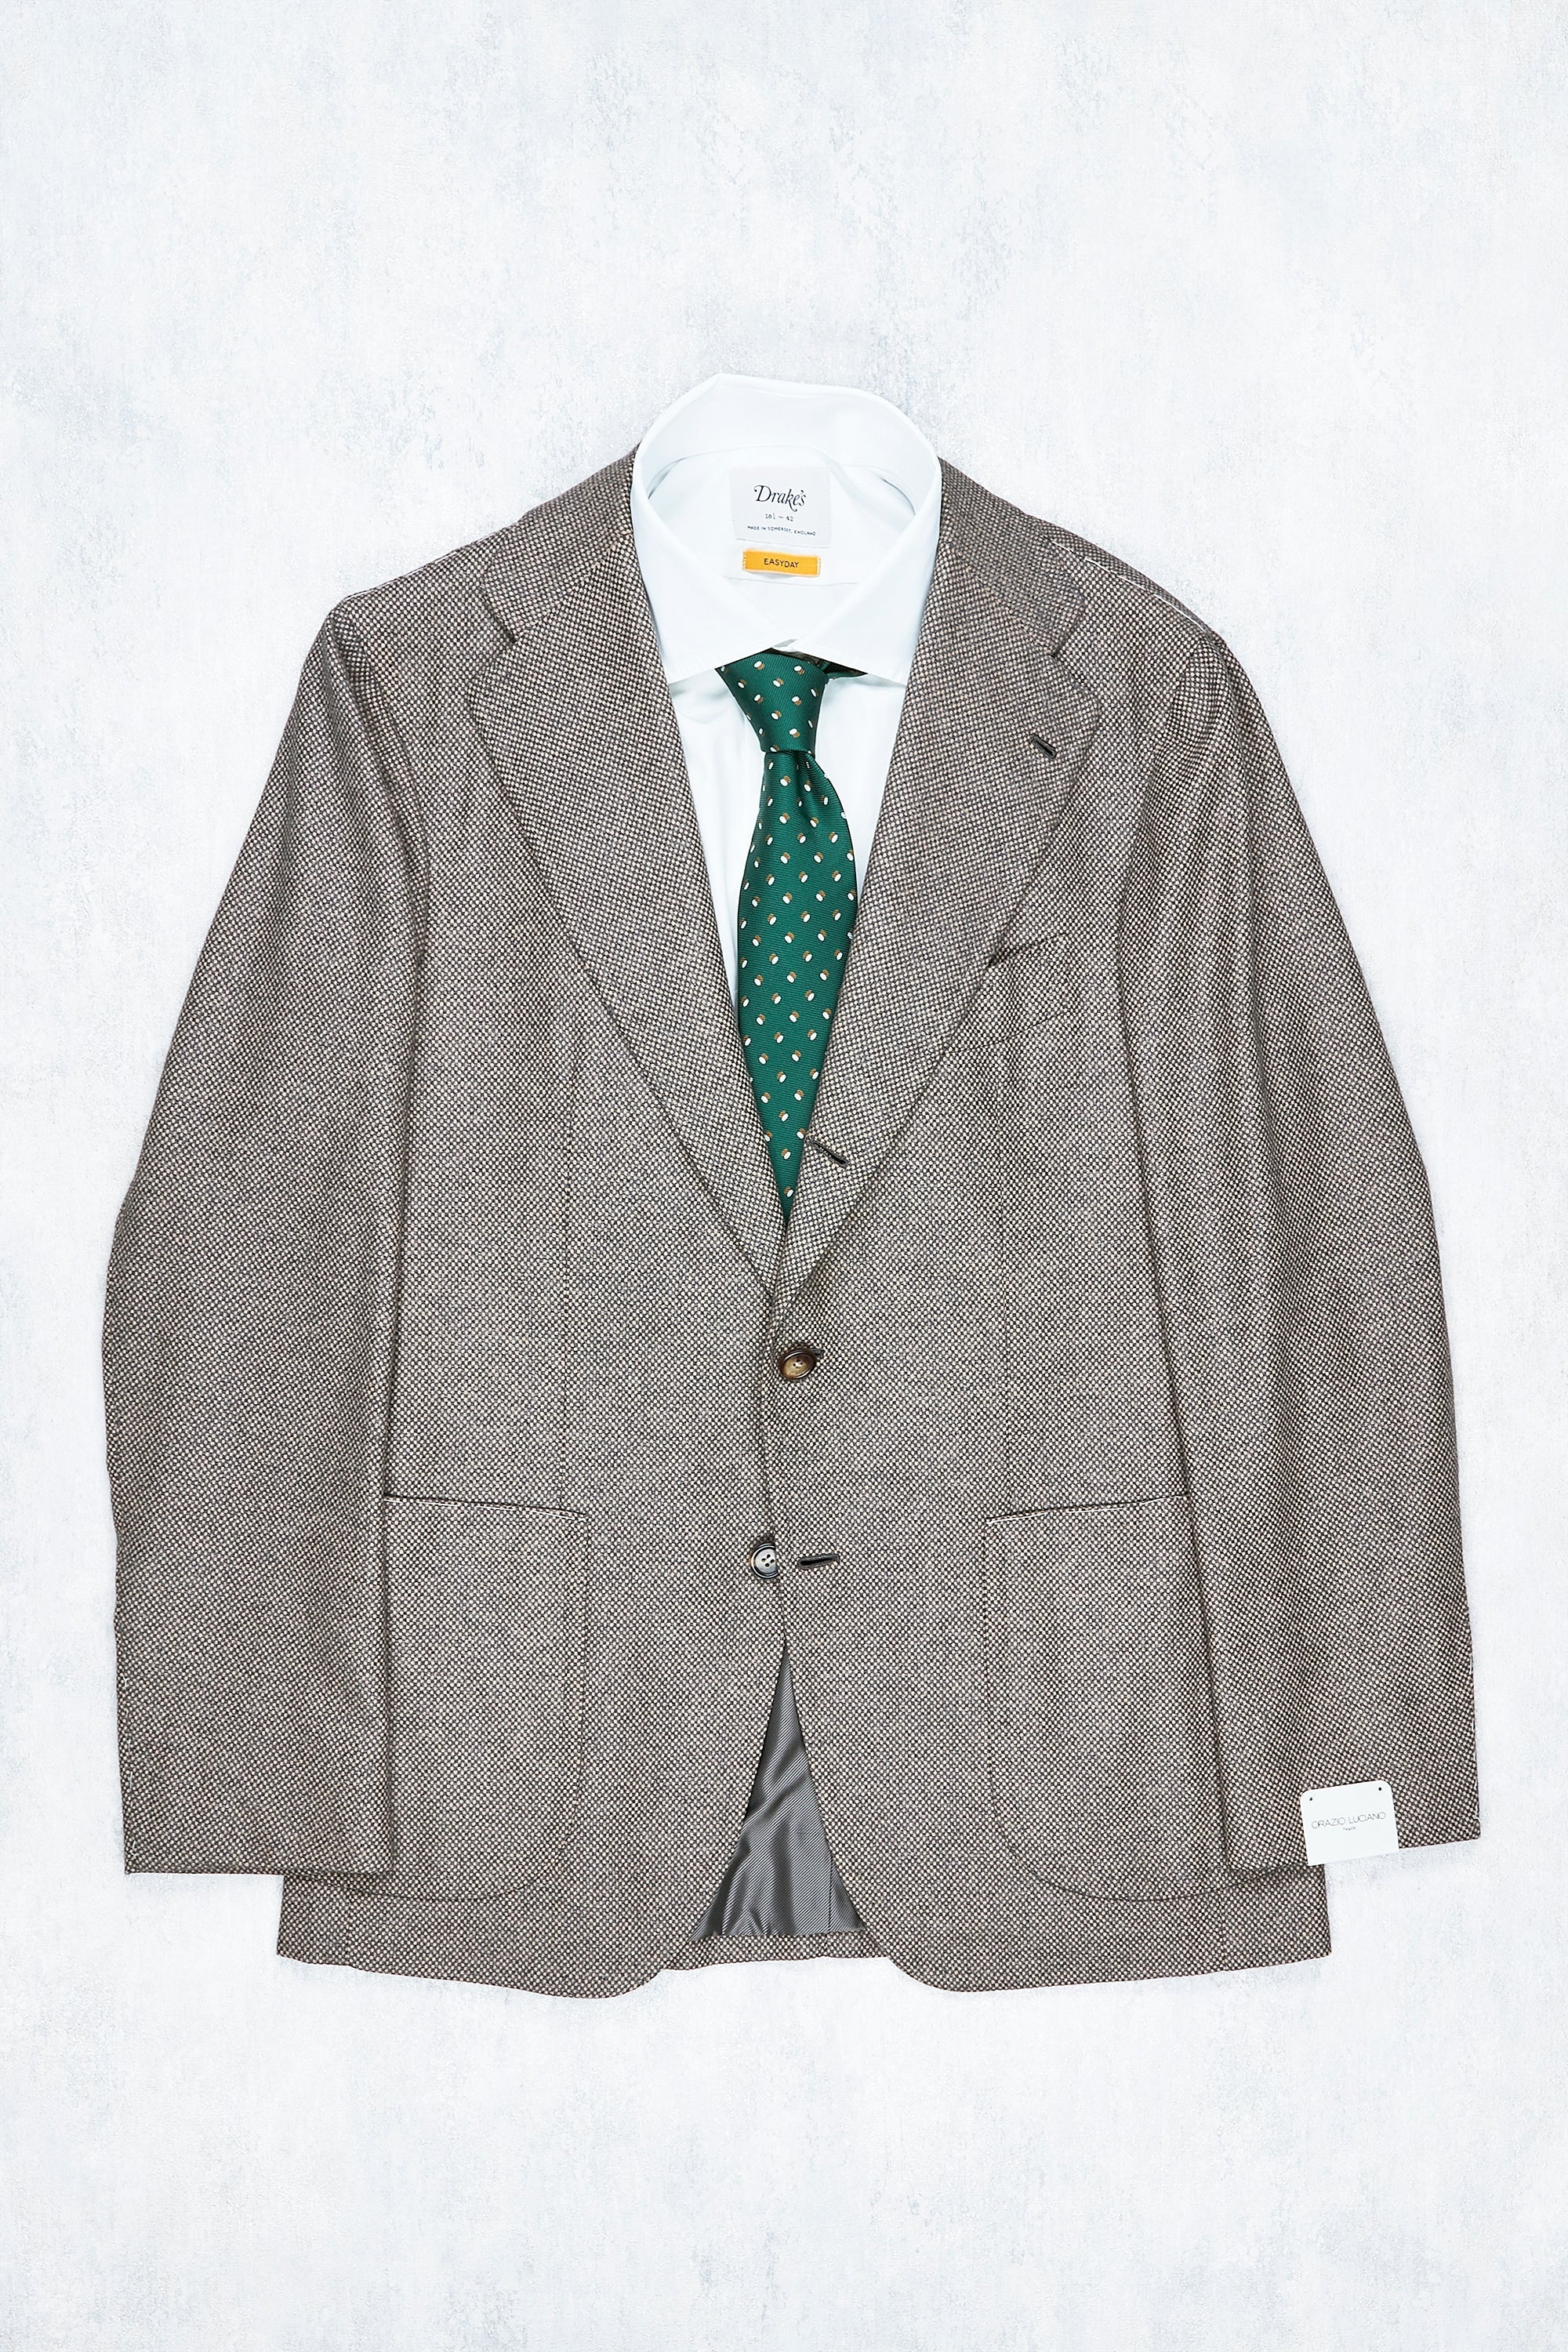 Orazio Luciano Grey/Beige Weave Wool Sport Coat